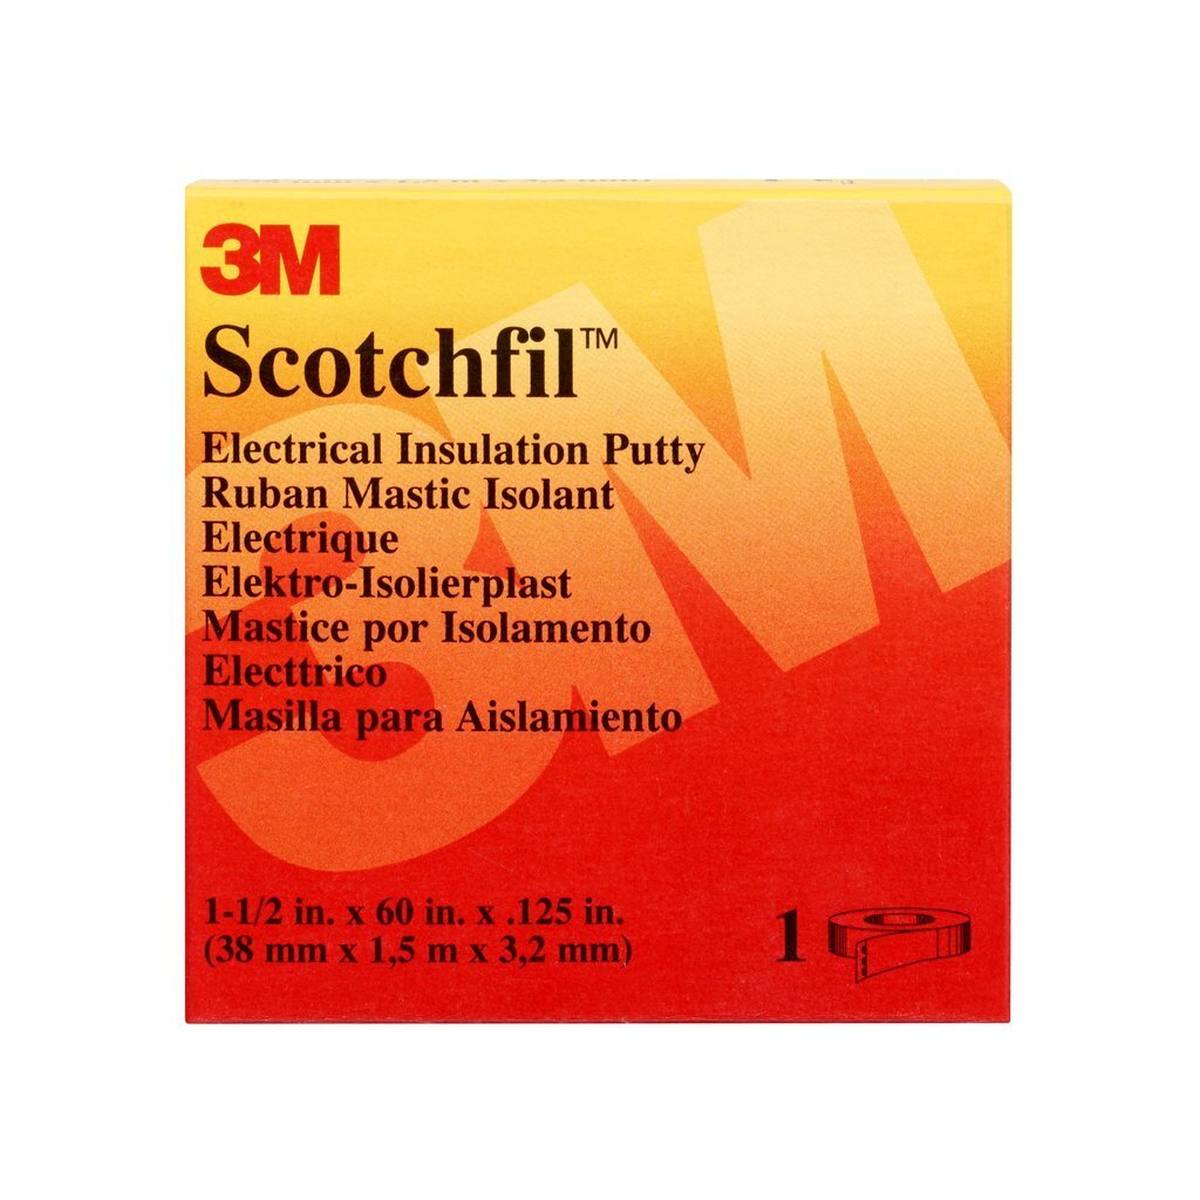 3M Scotchfil Selbstverschweißendes Buthyl-Kautschuk-Band, Schwarz, 38 mm x 1,5 m, 3 mm